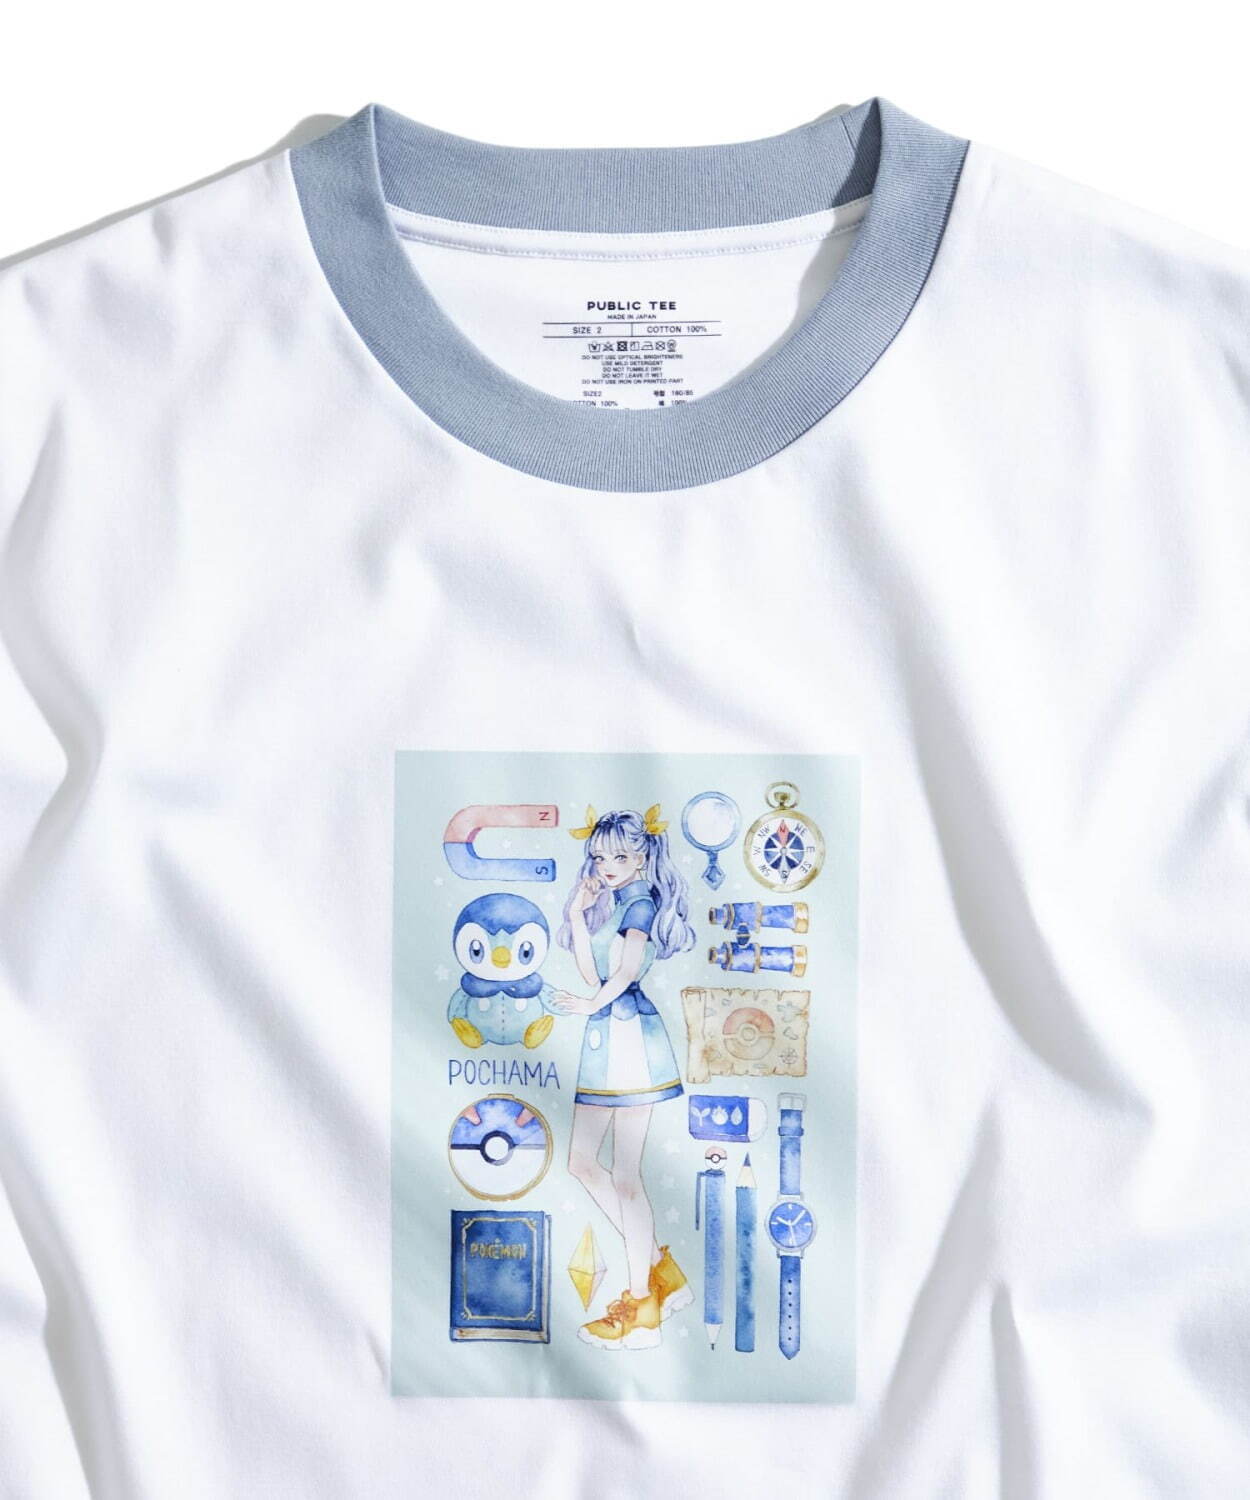 ポケモン ポッチャマ Tシャツがパブリック トウキョウから 気鋭クリエイターとコラボ ファッションプレス